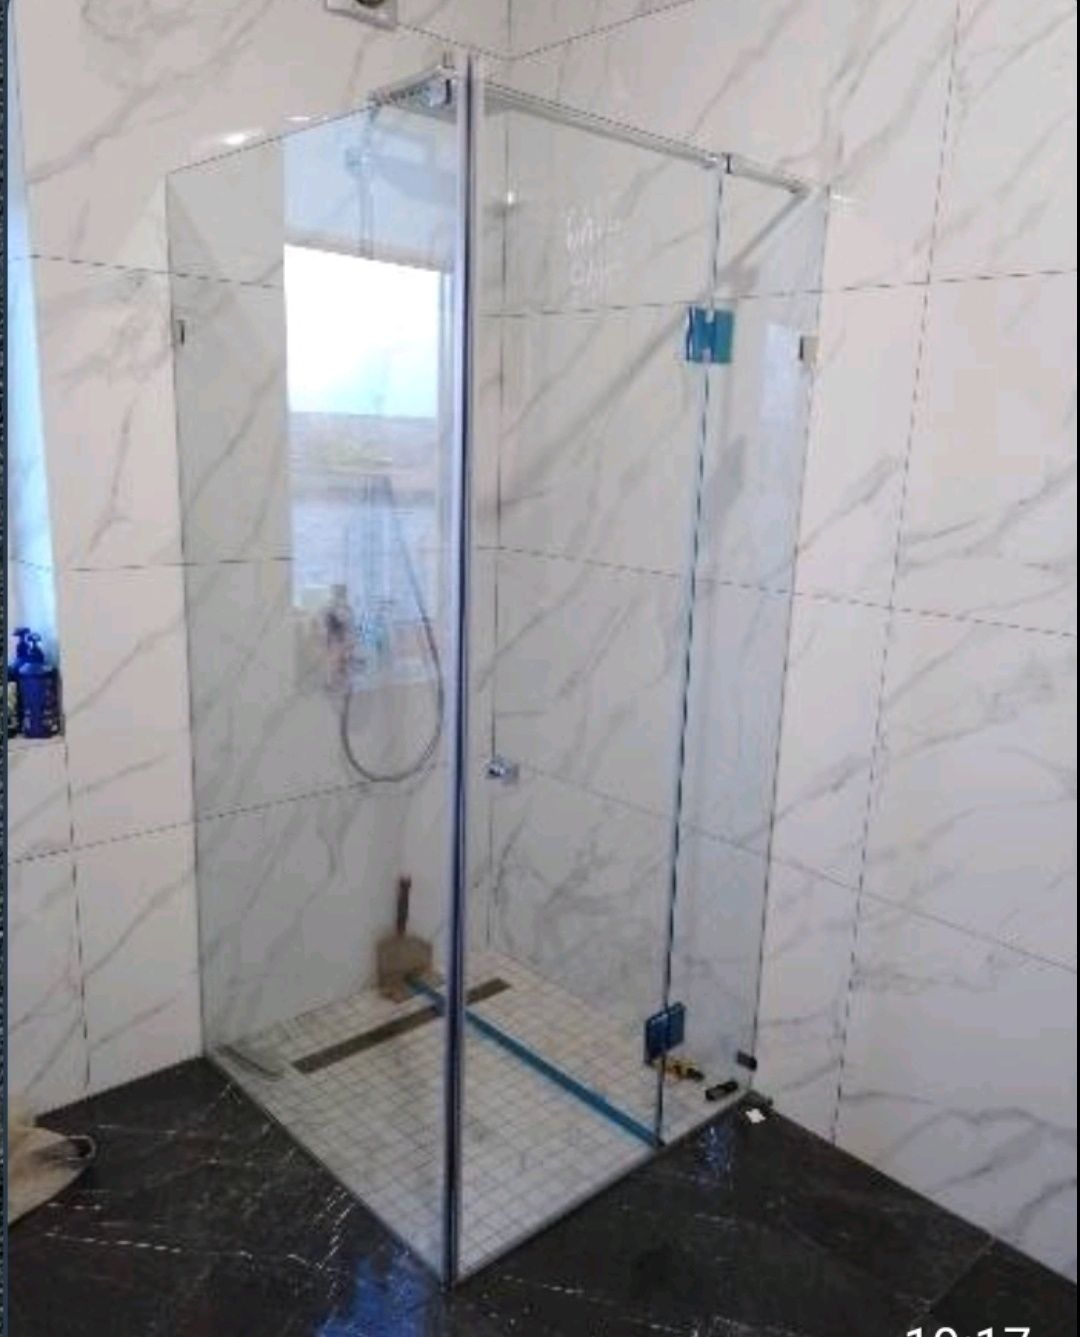 Скляна душова кабіна, душові перегородки, міжкімнатні перегородки.